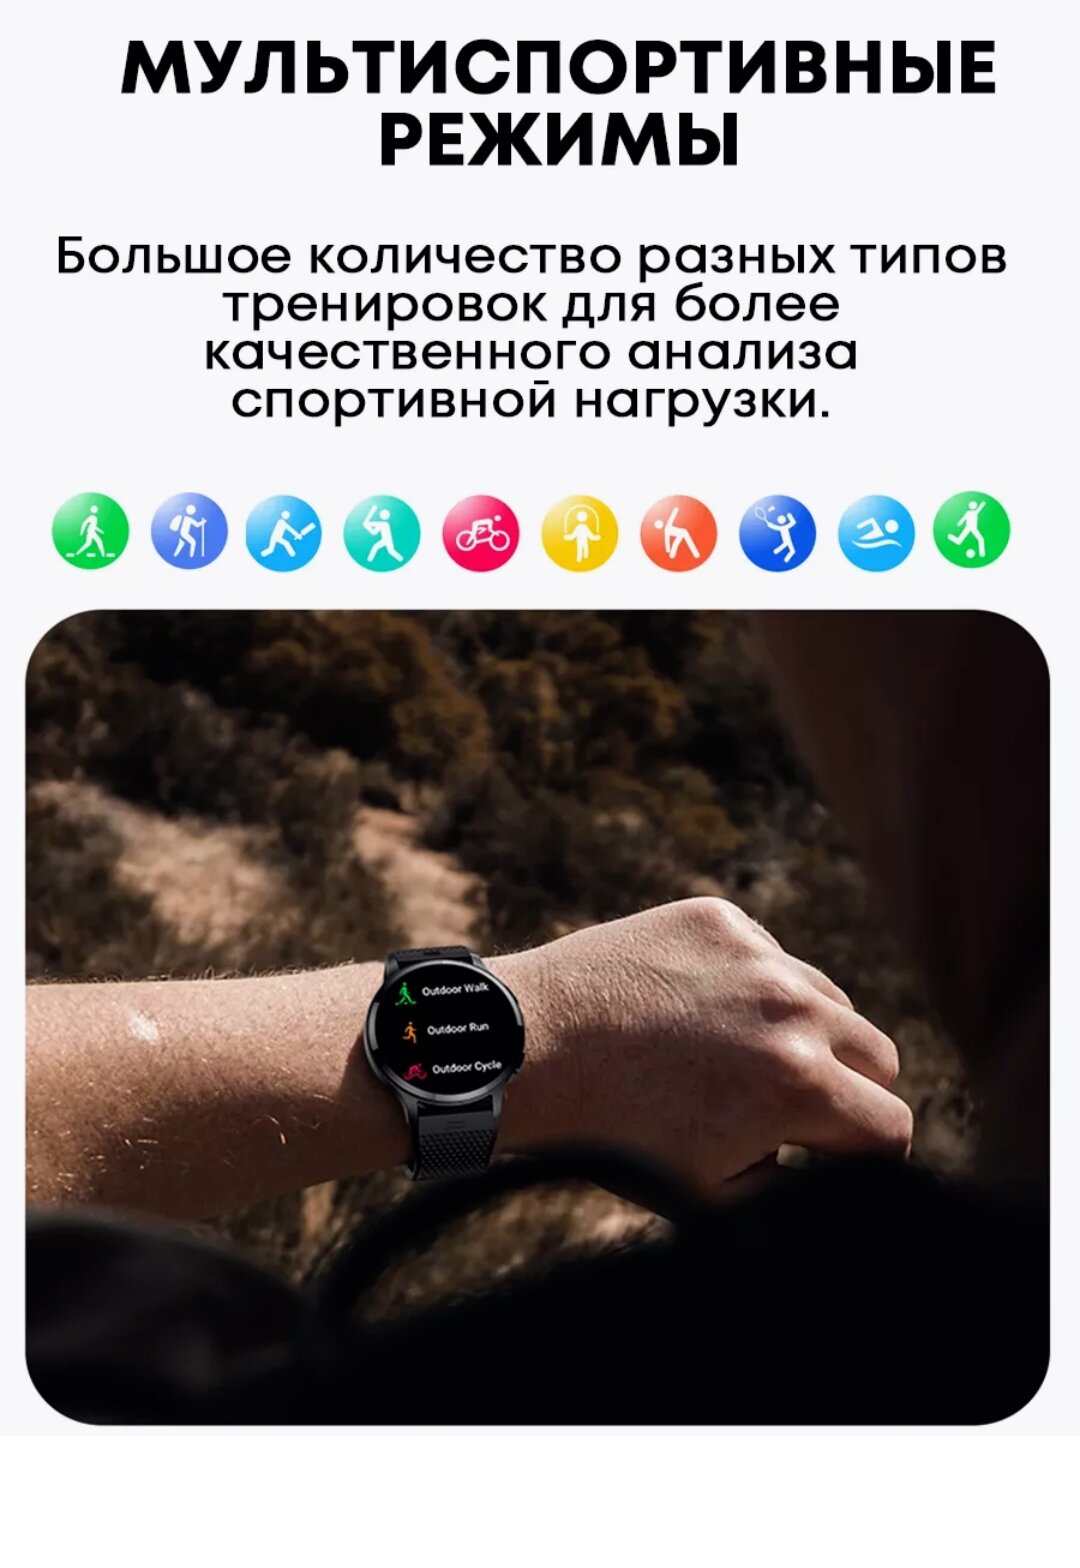 Смарт часы для смартфонов Iphone и Android черные.